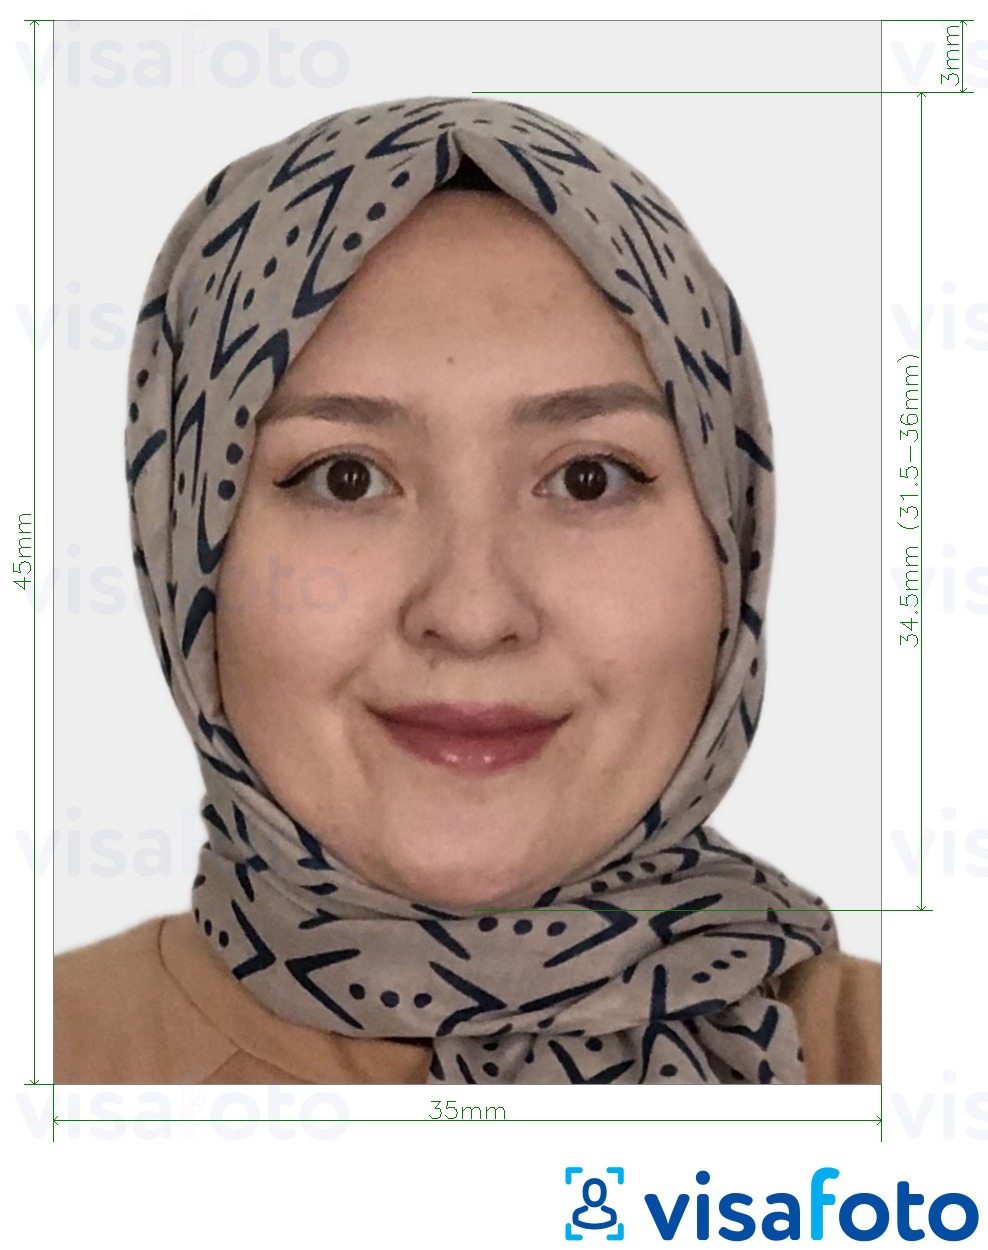 Exemplo de foto para Visa do Cazaquistão 35x45 mm (3.5x4.5 cm) com especificação exata de dimensão